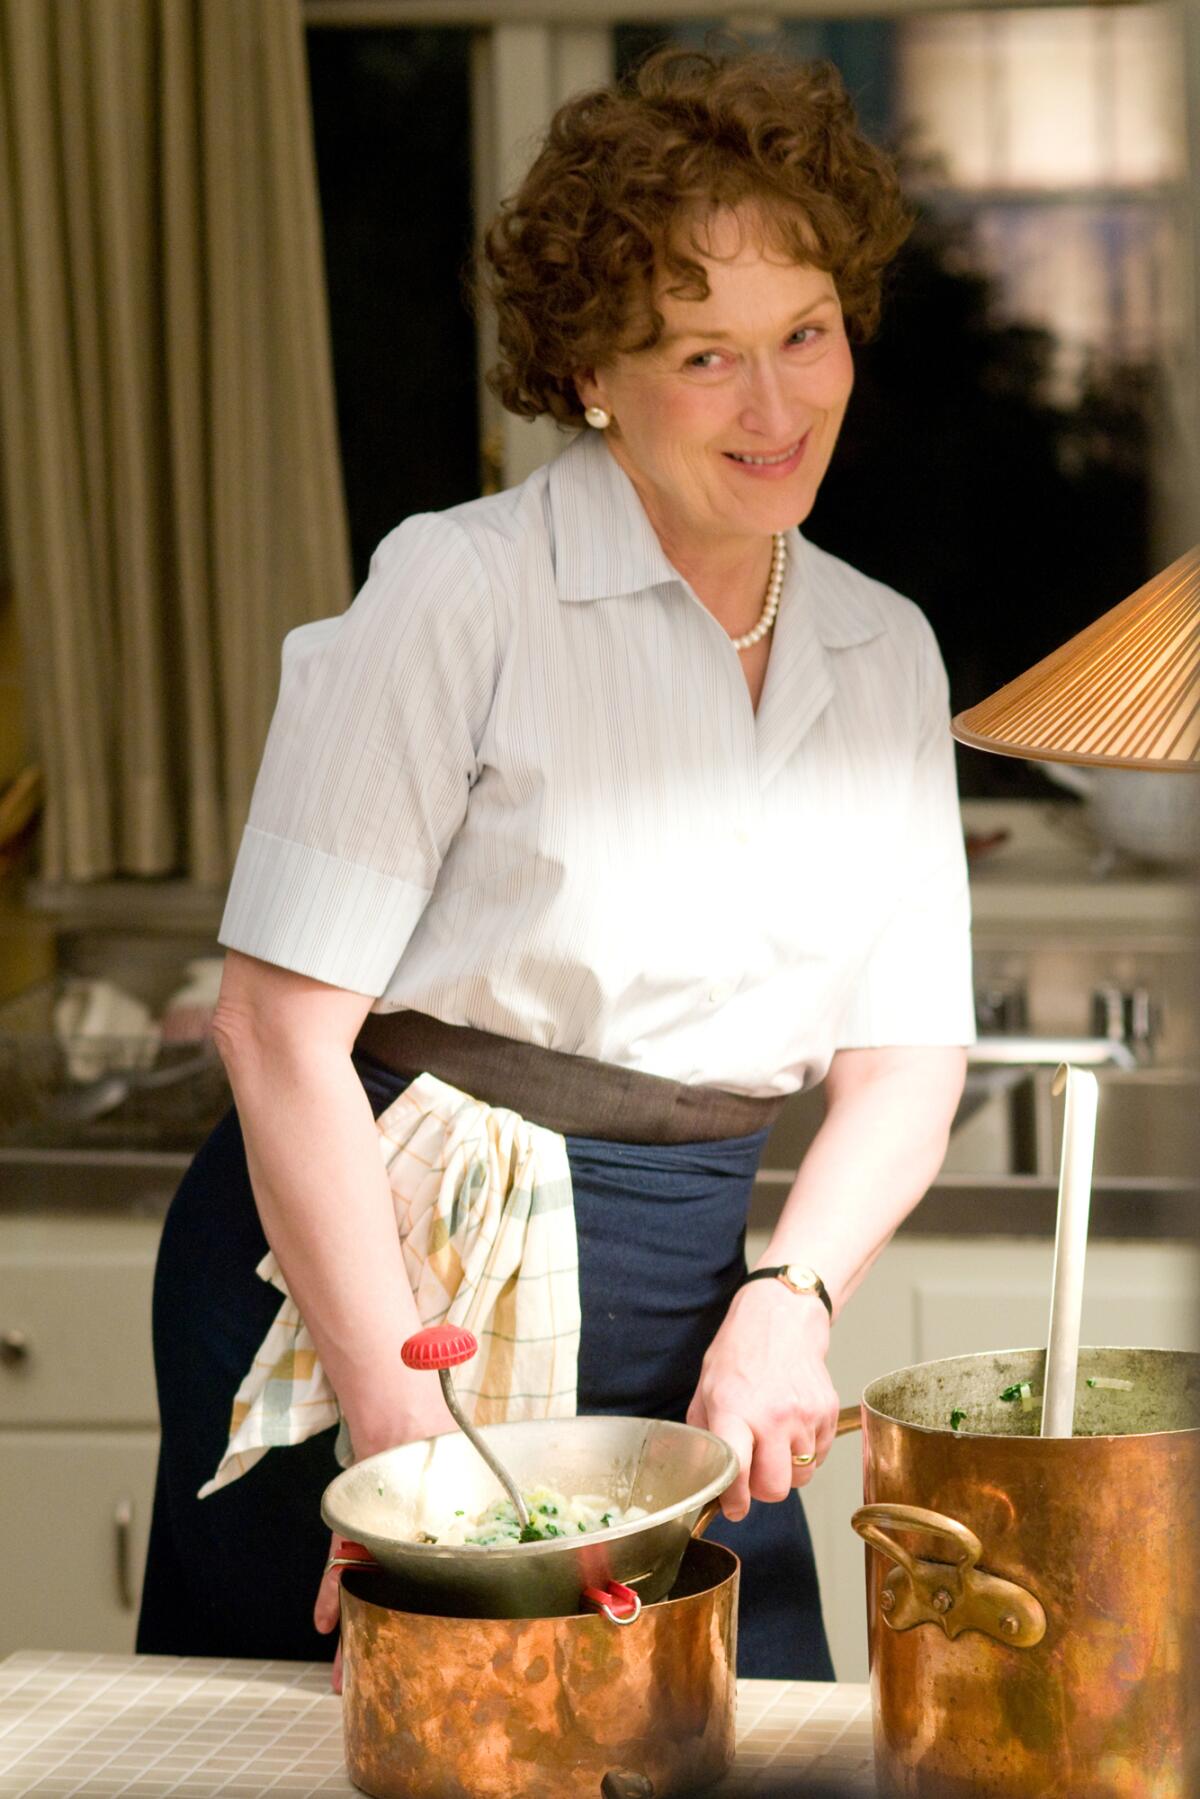 Meryl Streep as Julia Child, preparing food in the movie “Julie & Julia” (2009)